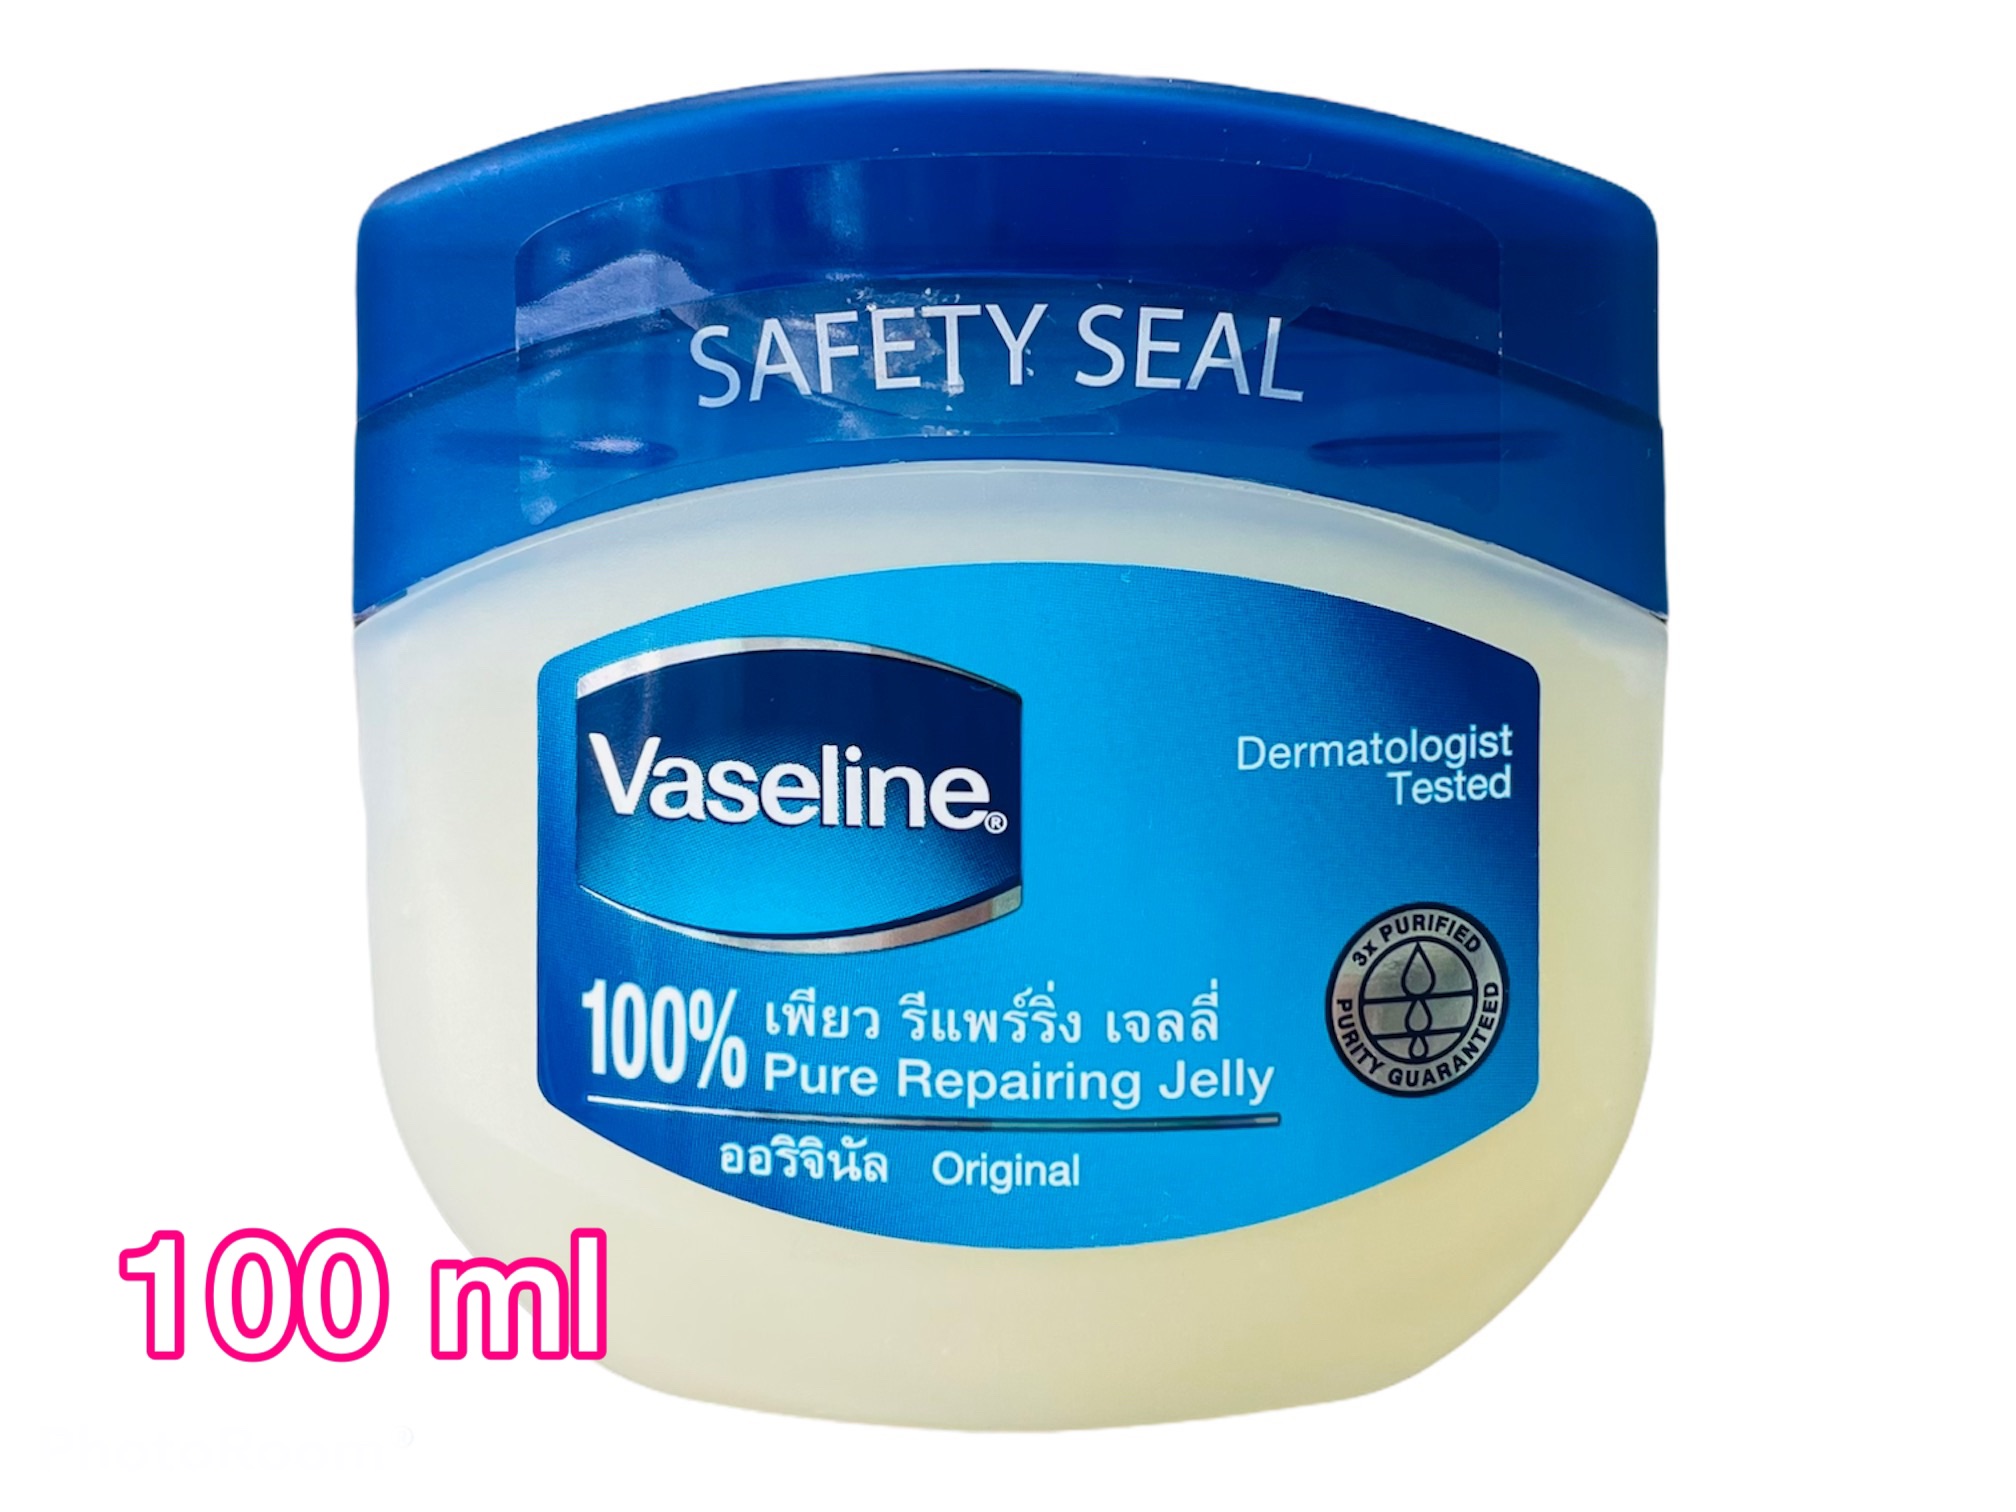 Vaseline 100% เพียว รีแพร์ริ่ง เจลลี่ 100 มล. บำรุงริมฝีปากและผิวกาย ราคา 1 กระปุก = 49 บาท วันหมดอายุ 10-2021